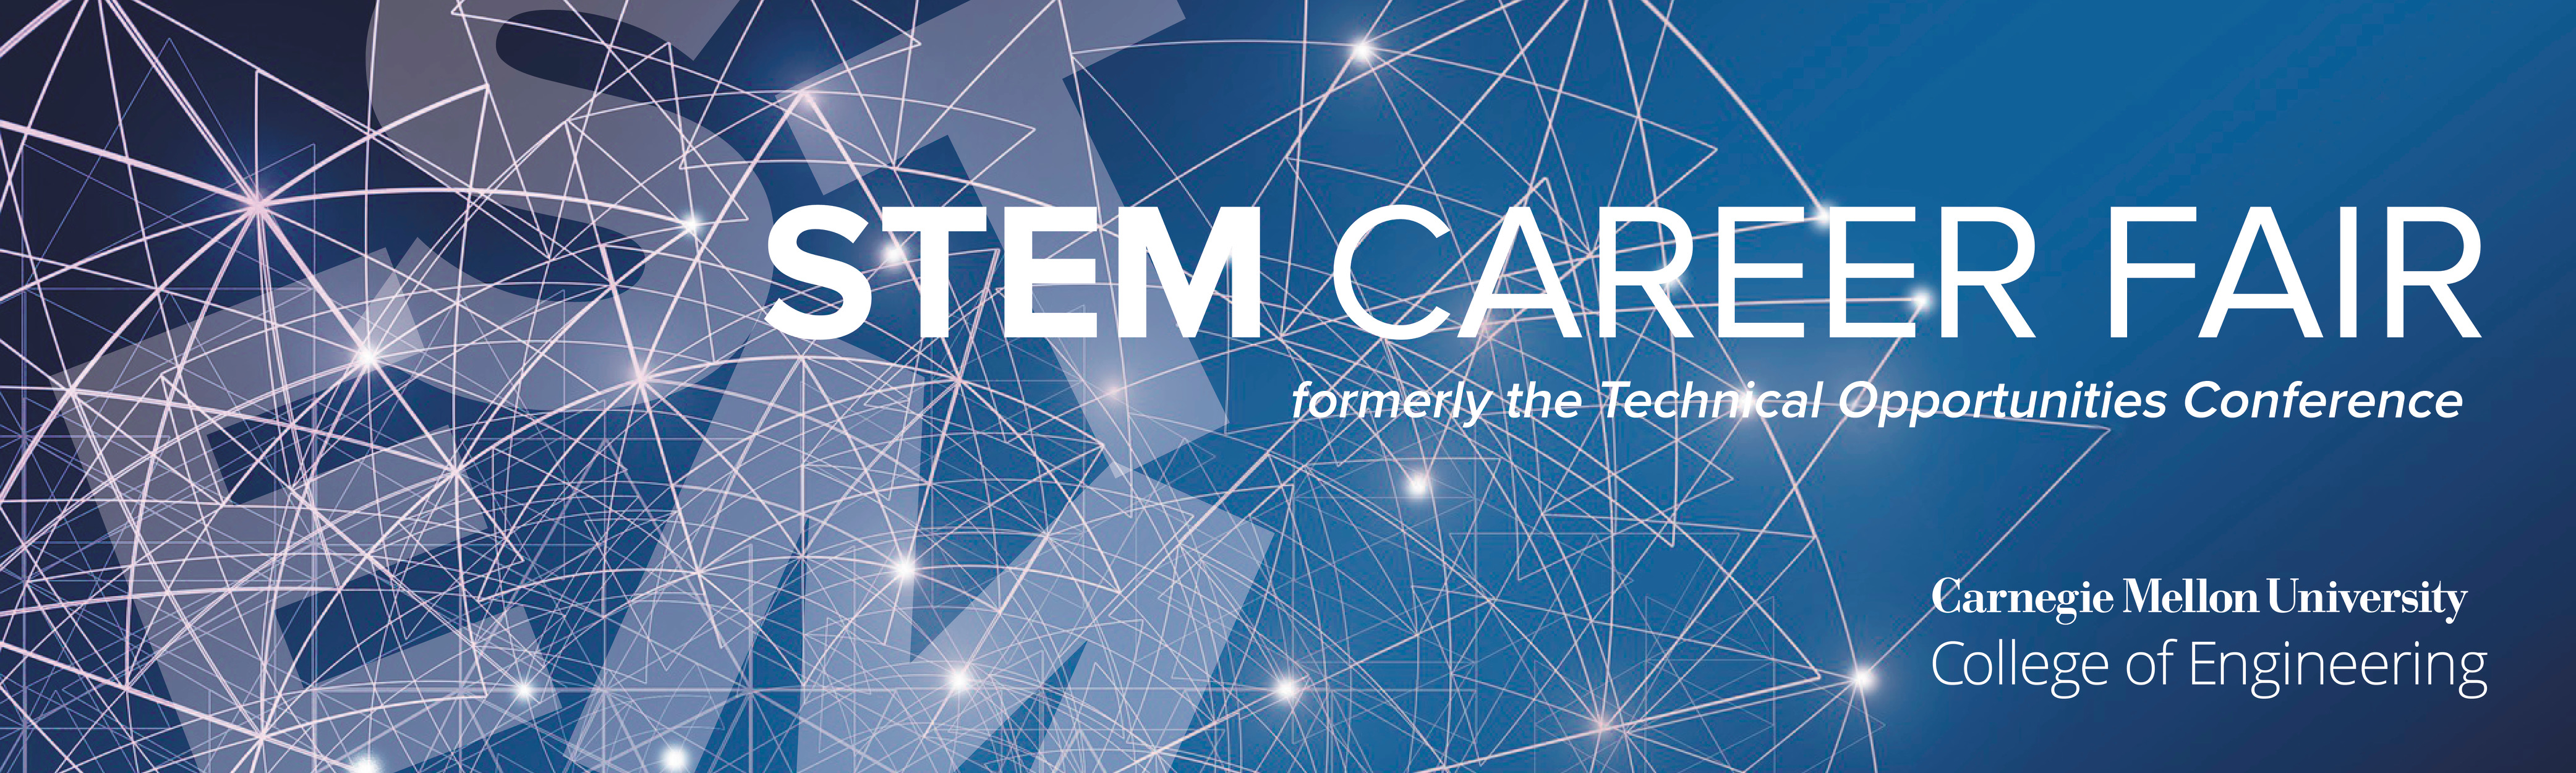 STEM Career Fair graphic